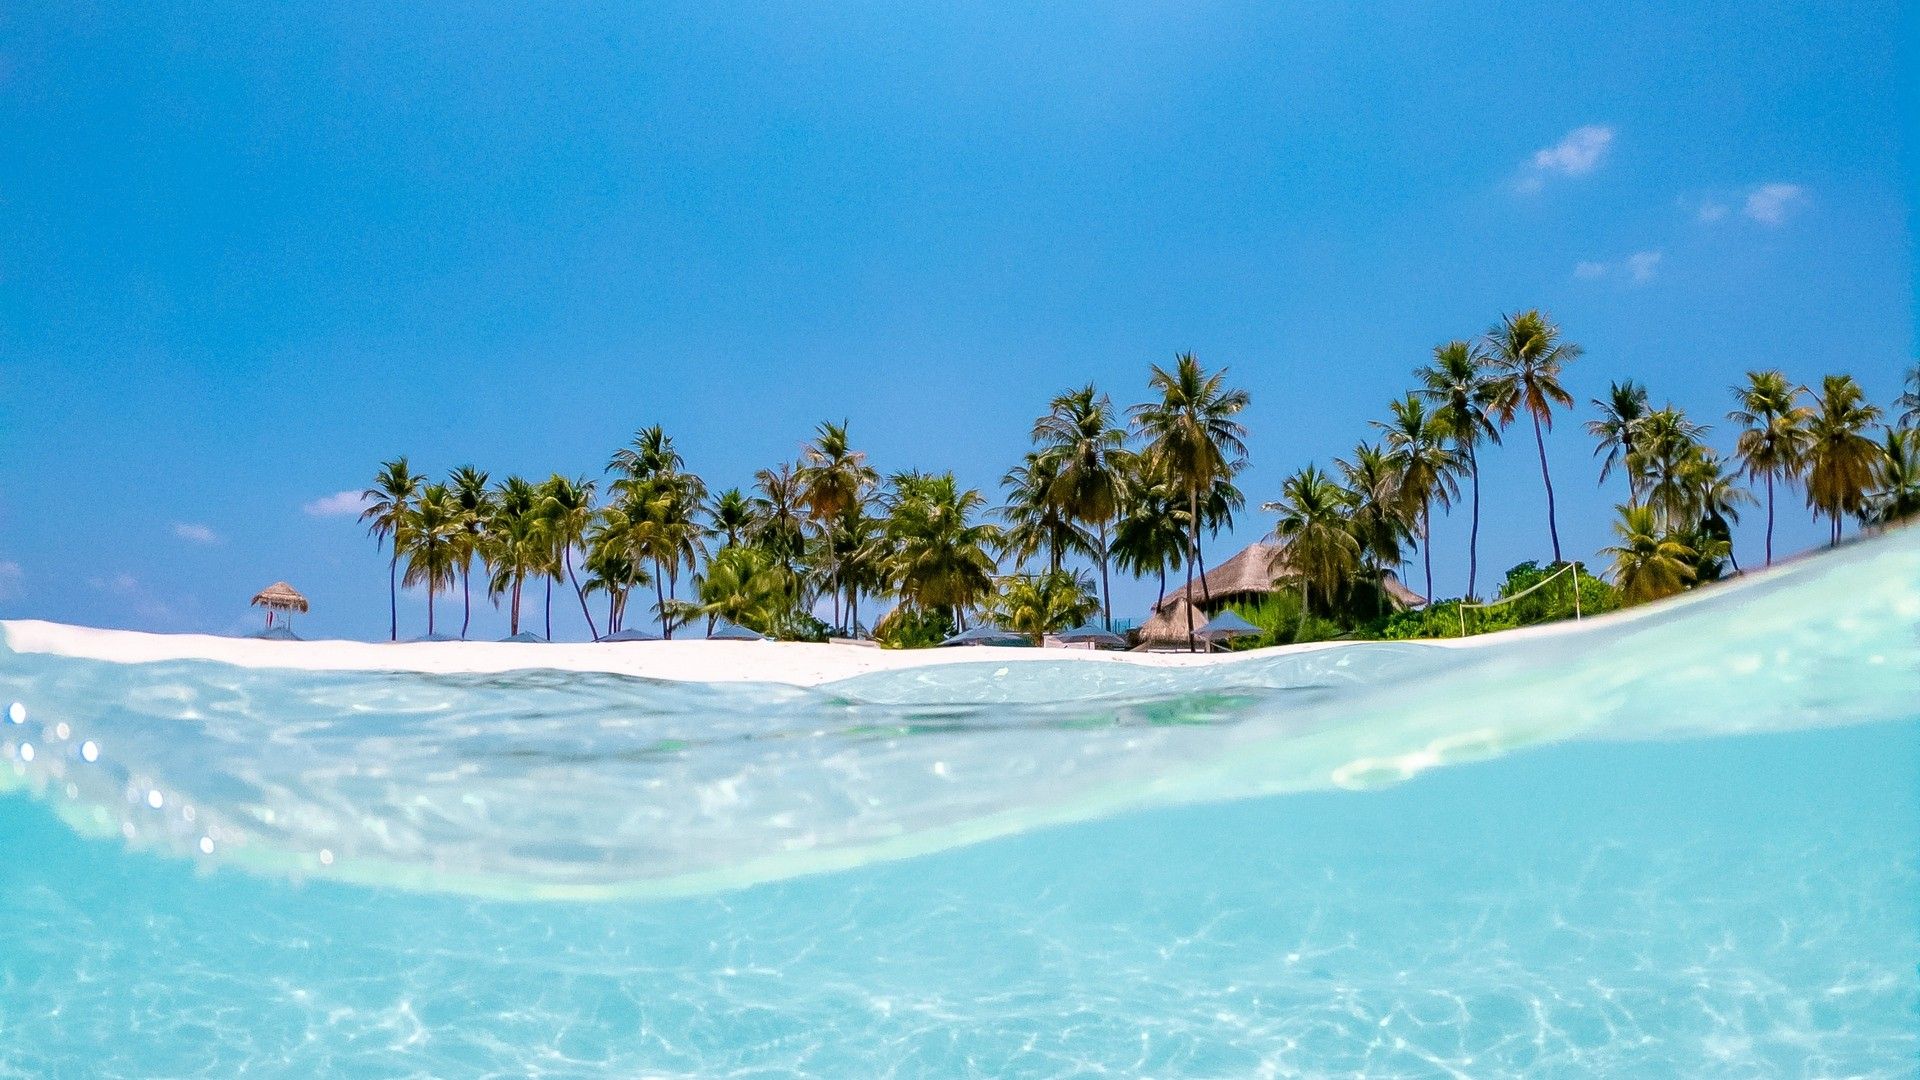  Karibik Hintergrundbild 1920x1080. Meer, Palmen, Sonne, Strand, Welle, Wasser, Blau. Bild, Foto, Desktop Hintergrund